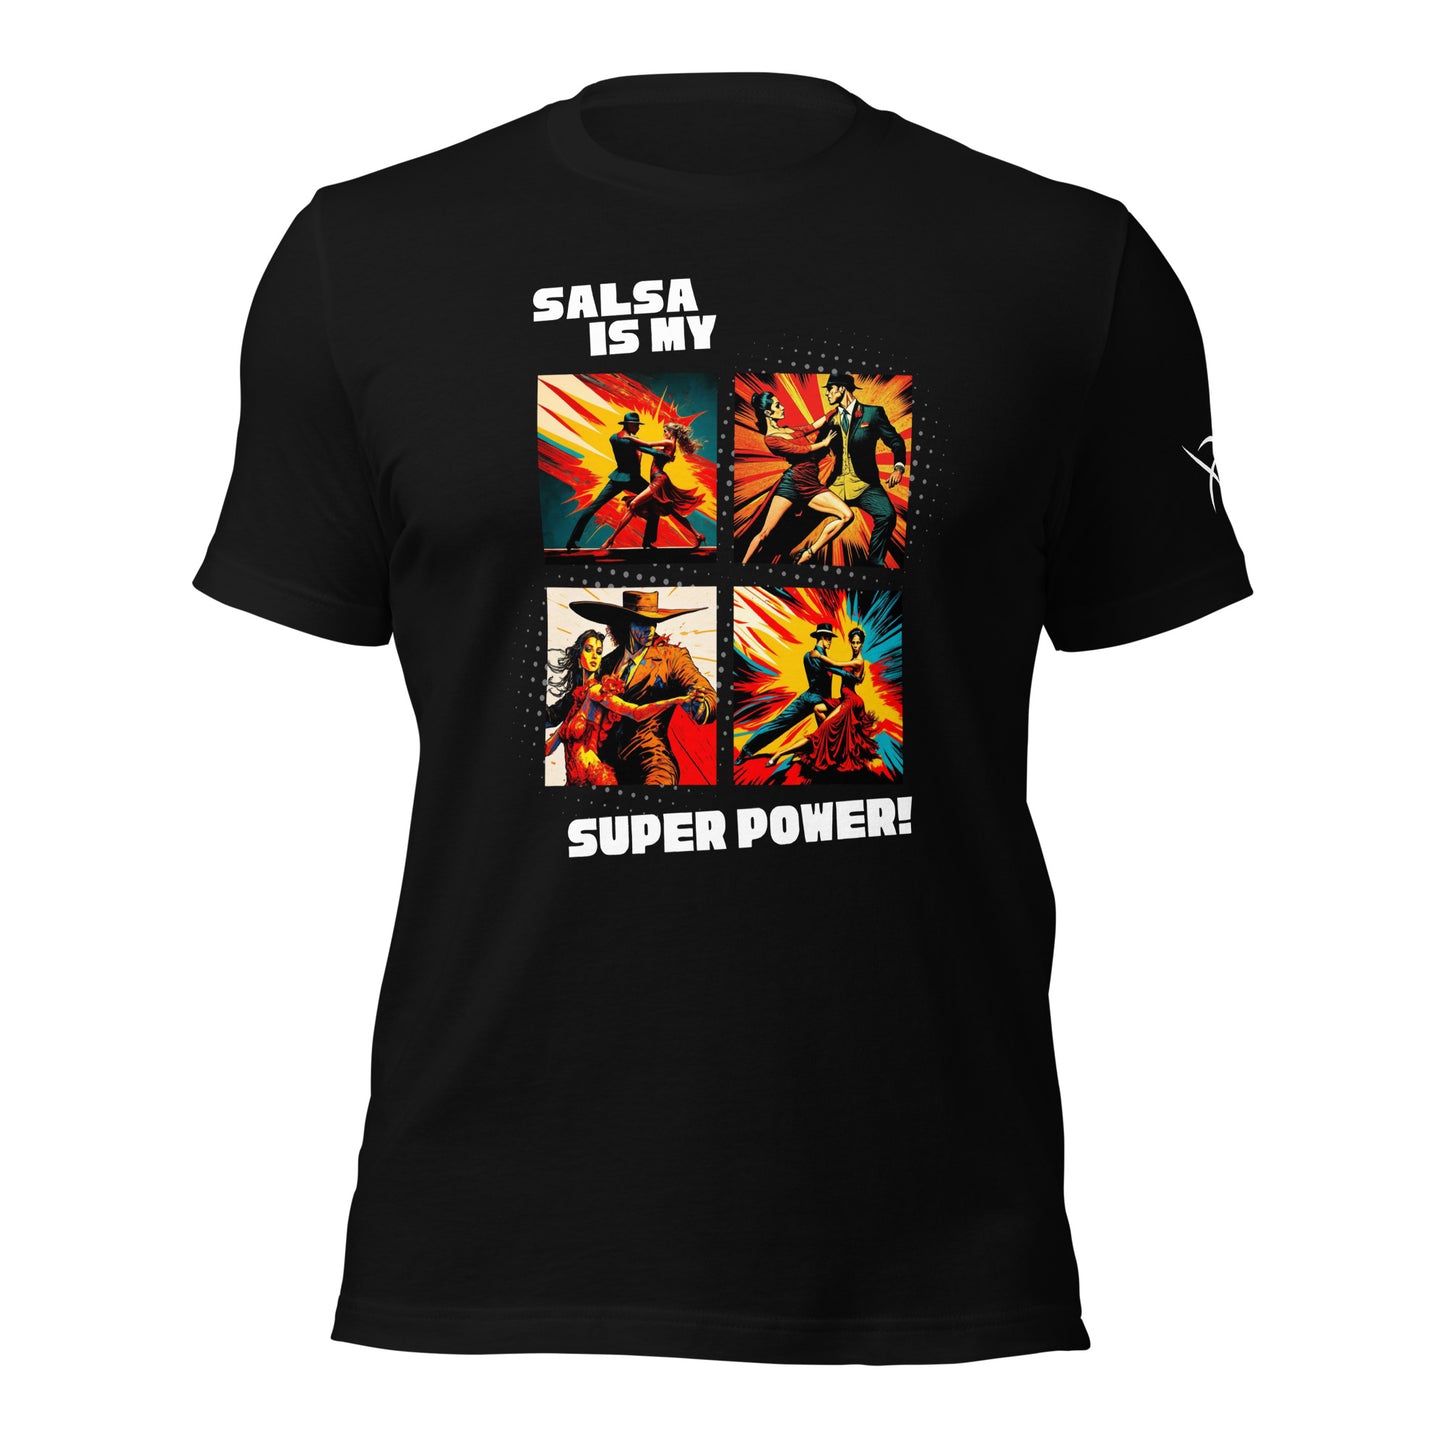 Salsa is My Super Power!